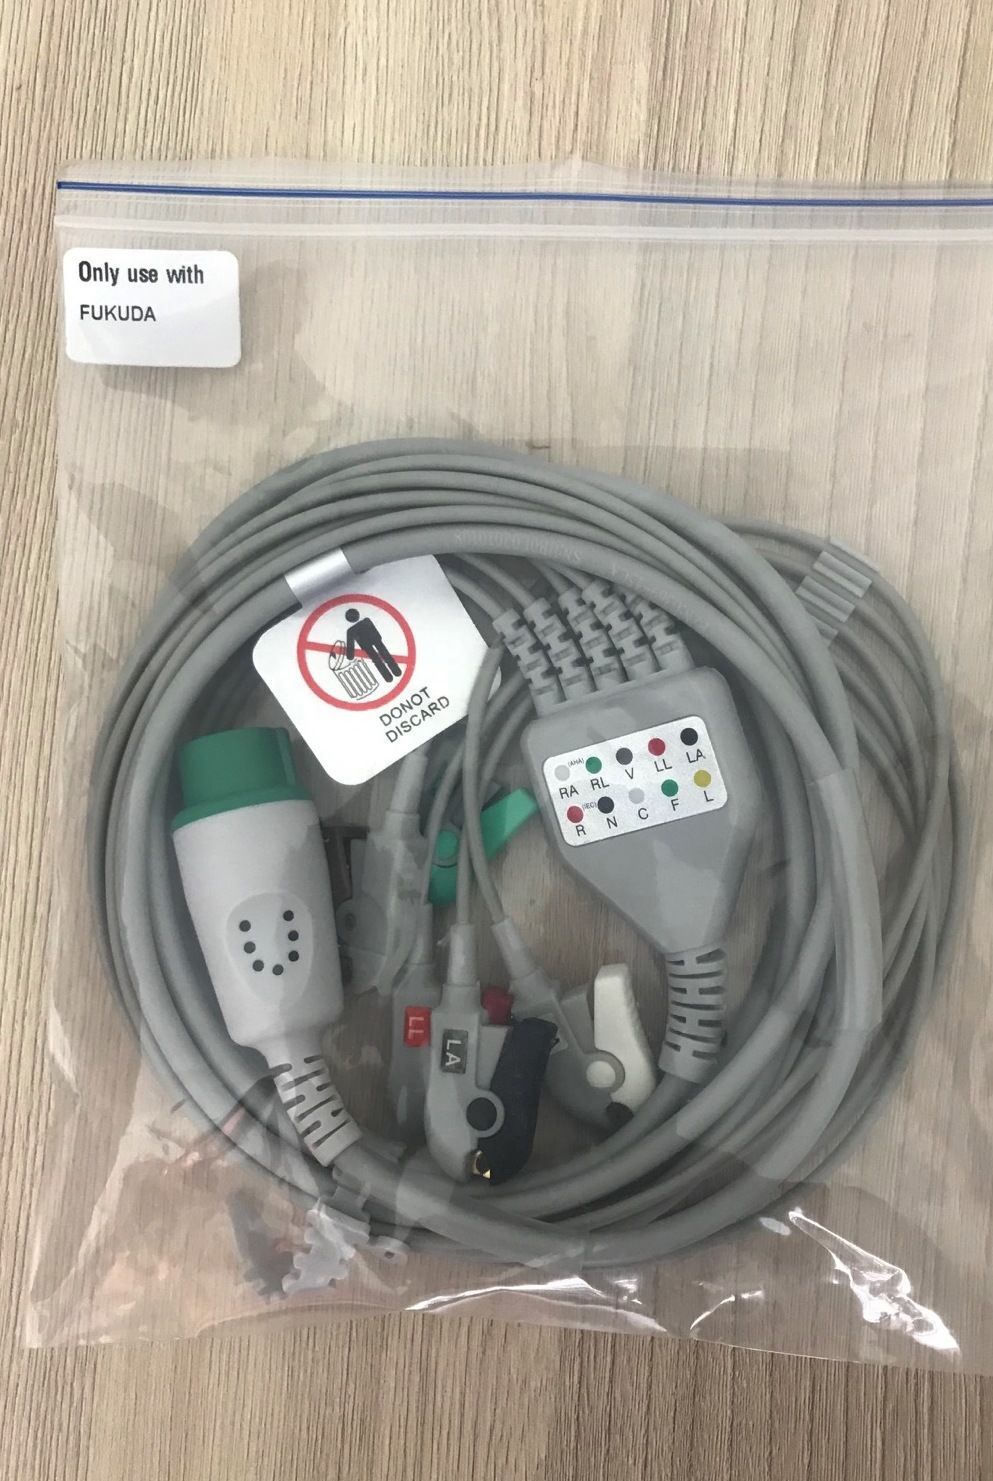 ECG 5 lead direct connect cable for Fukuda DS-7100_สายอีซีจี 5 ลีดเคเบิ้ลสำหรับเครื่องมอนิเตอร์สัญญาณชีพผู้ป่วย Fukuda รุ่น DS-7100